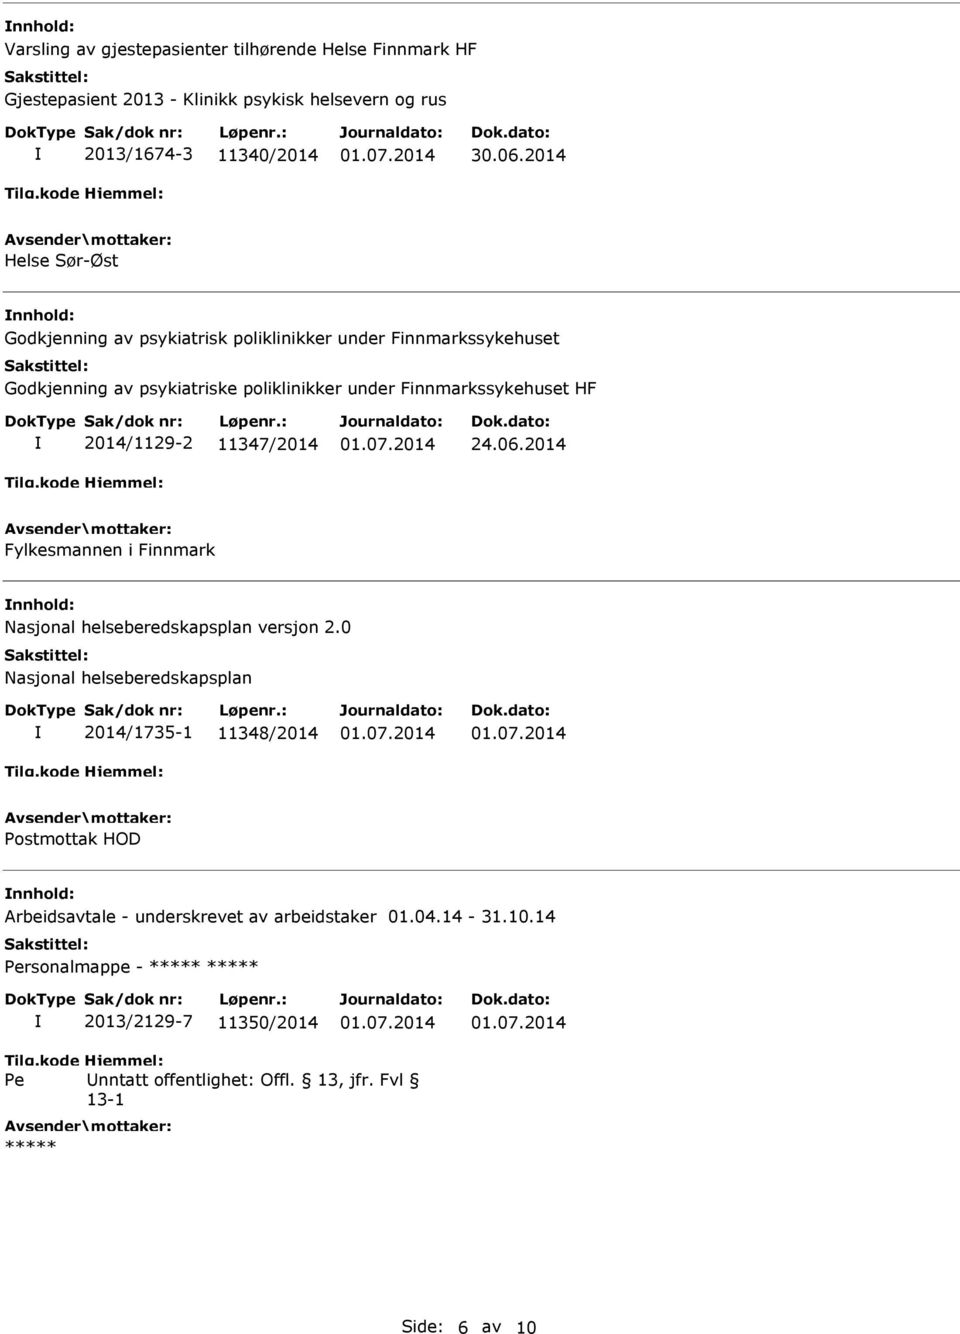 11347/2014 Fylkesmannen i Finnmark Nasjonal helseberedskapsplan versjon 2.